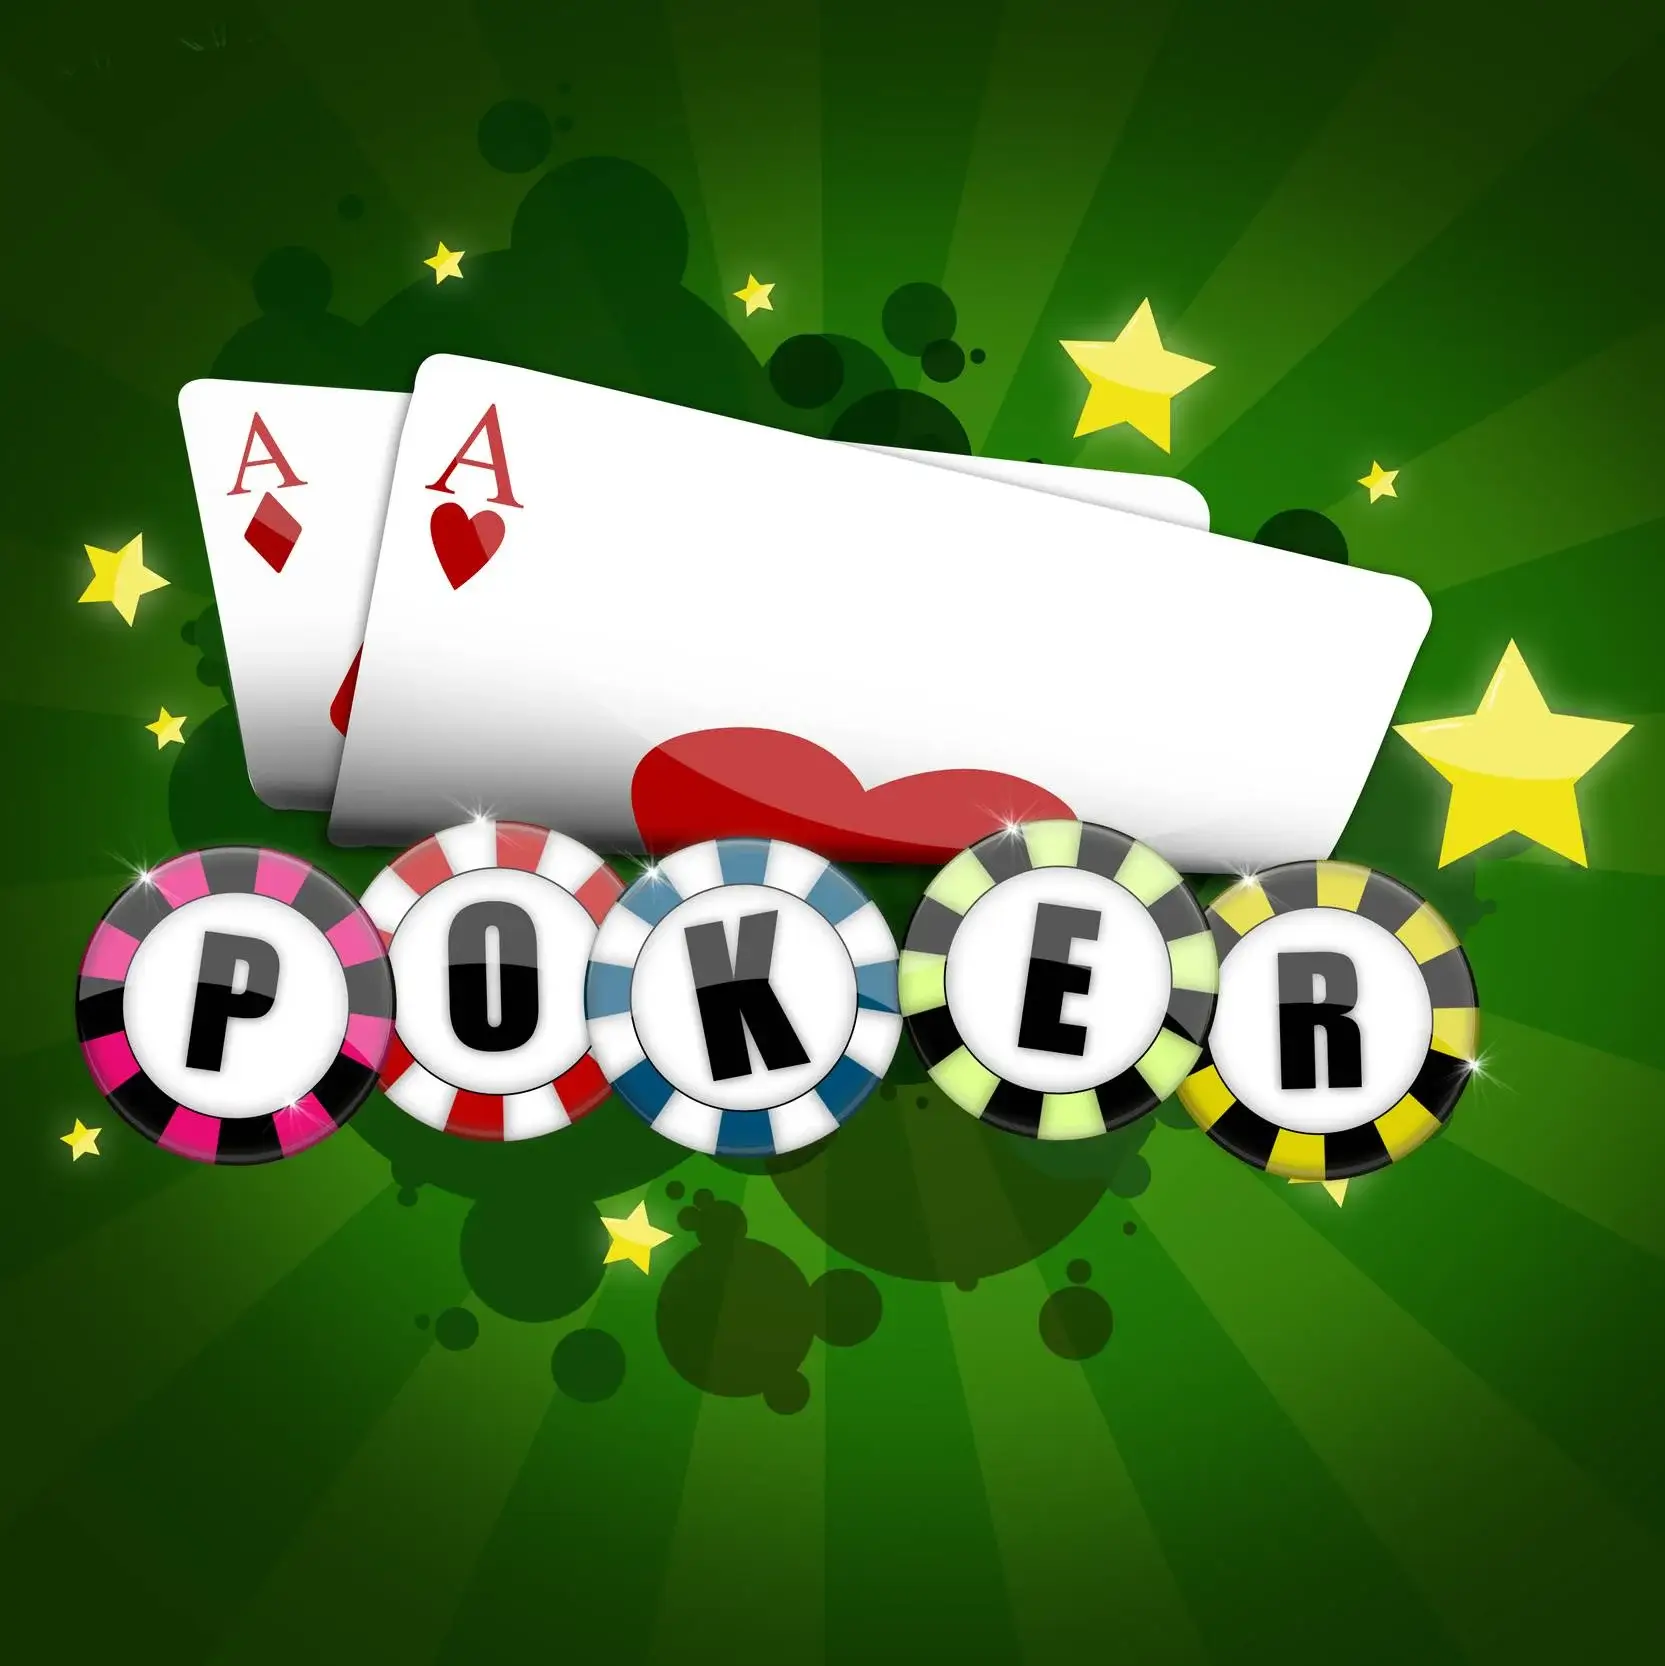 Пополнение покер-румов картой